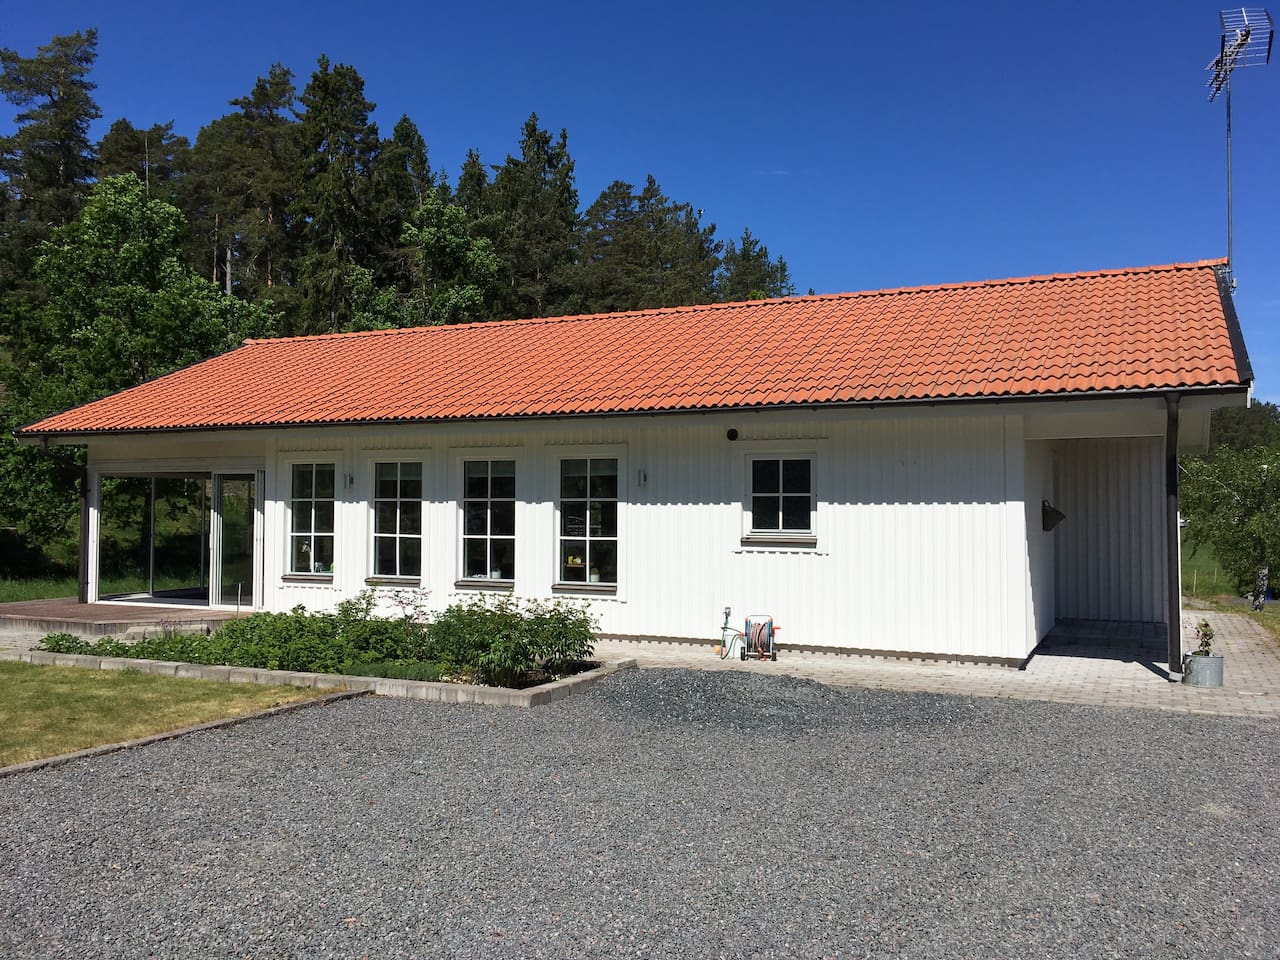 Fritidshus i Snäckevarp, Gryts skärgård - Hus att hyra i ...